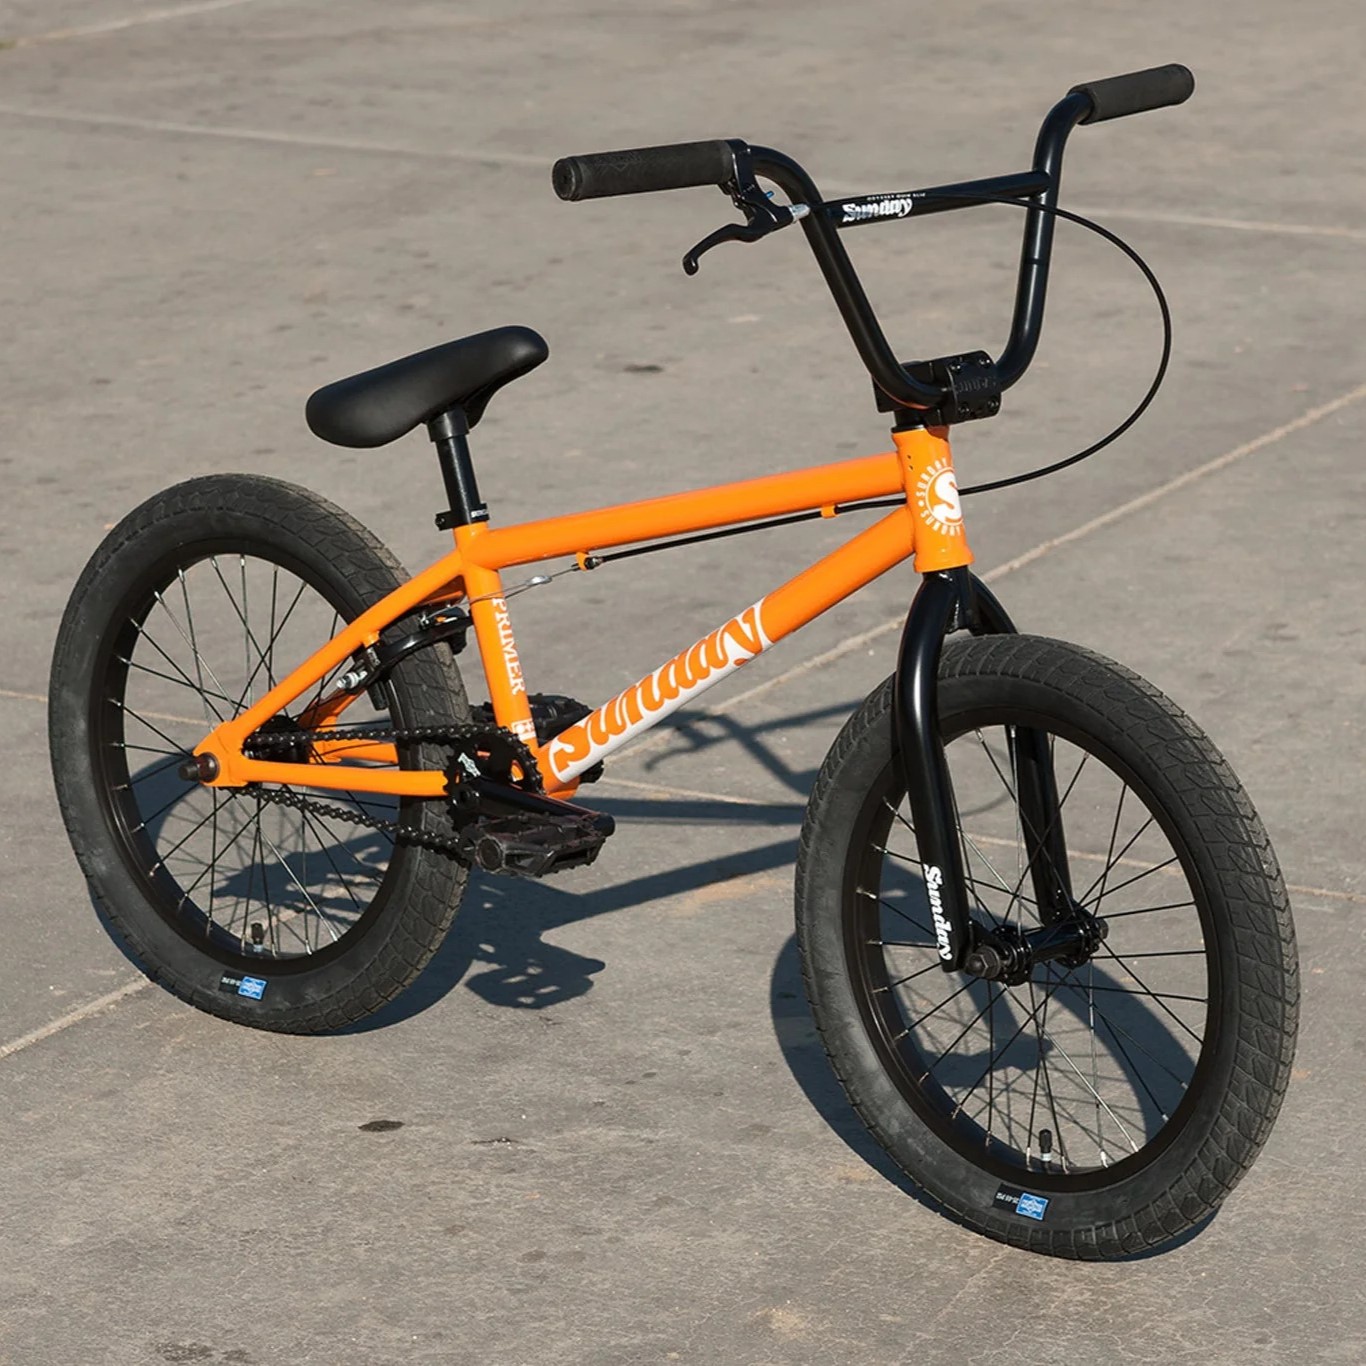 An orange Sunday bmx bike.